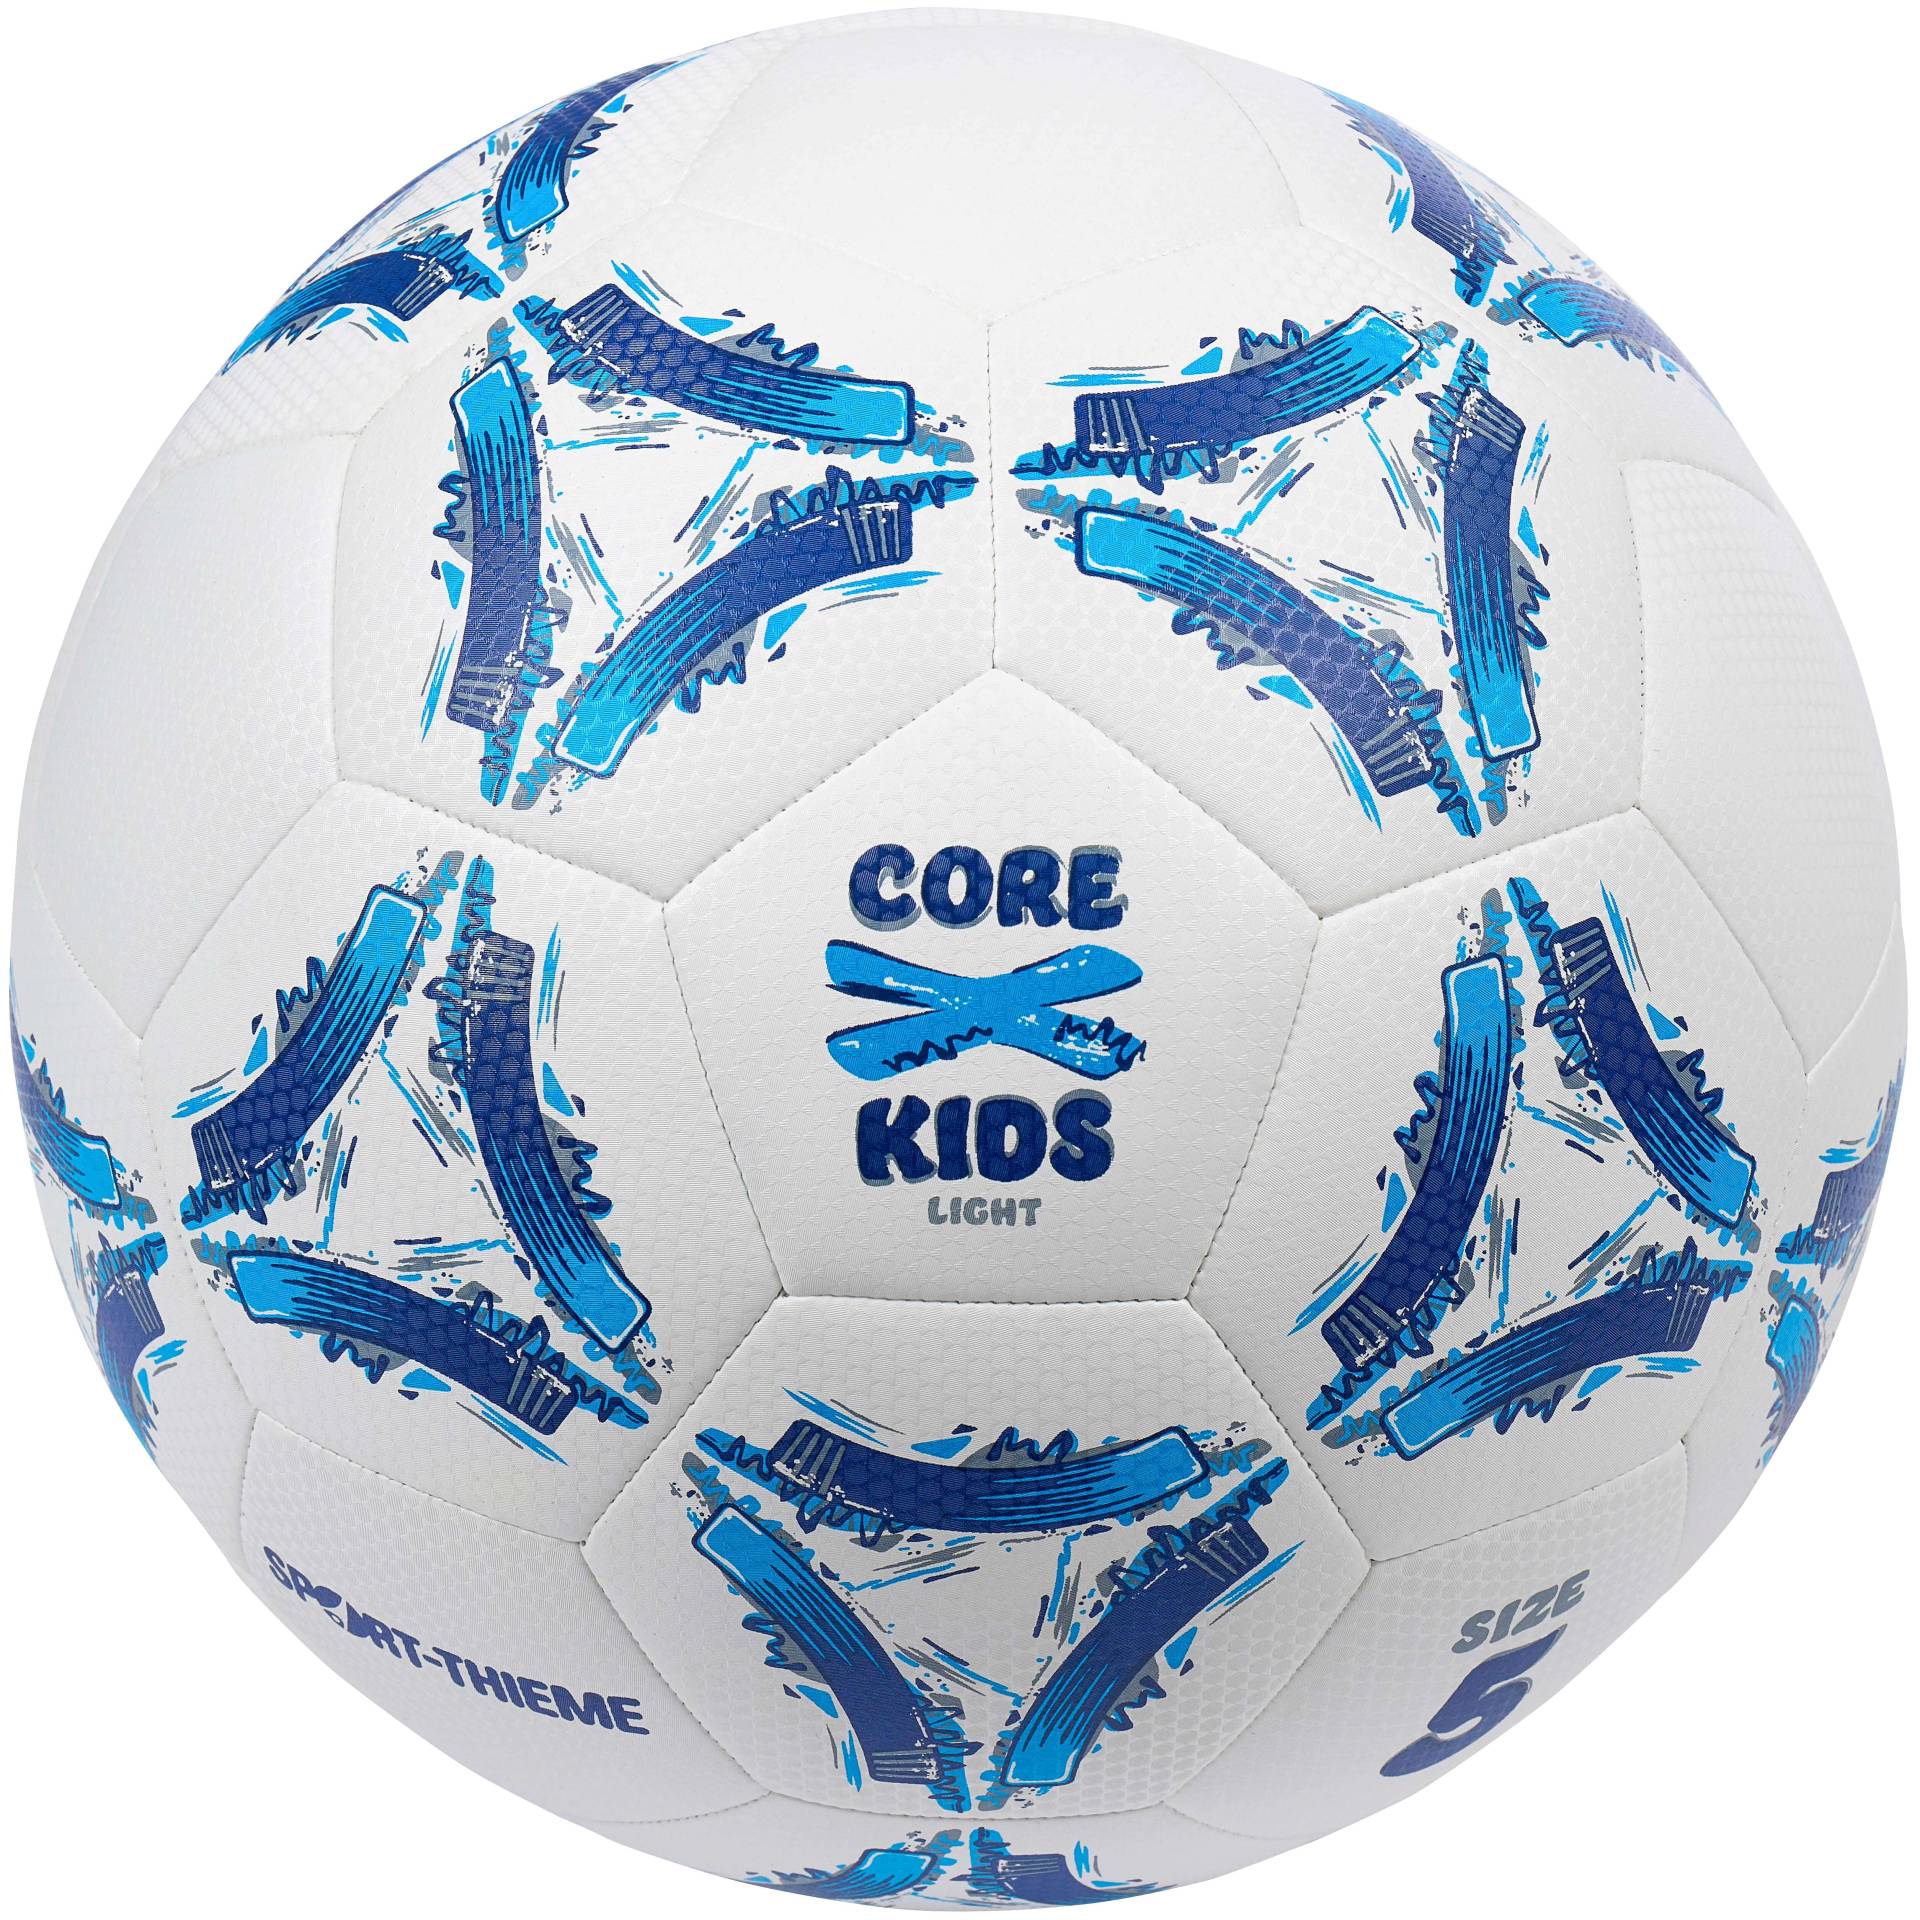 Sport-Thieme Fußball "CoreX Kids Light", Größe 5 von Sport-Thieme